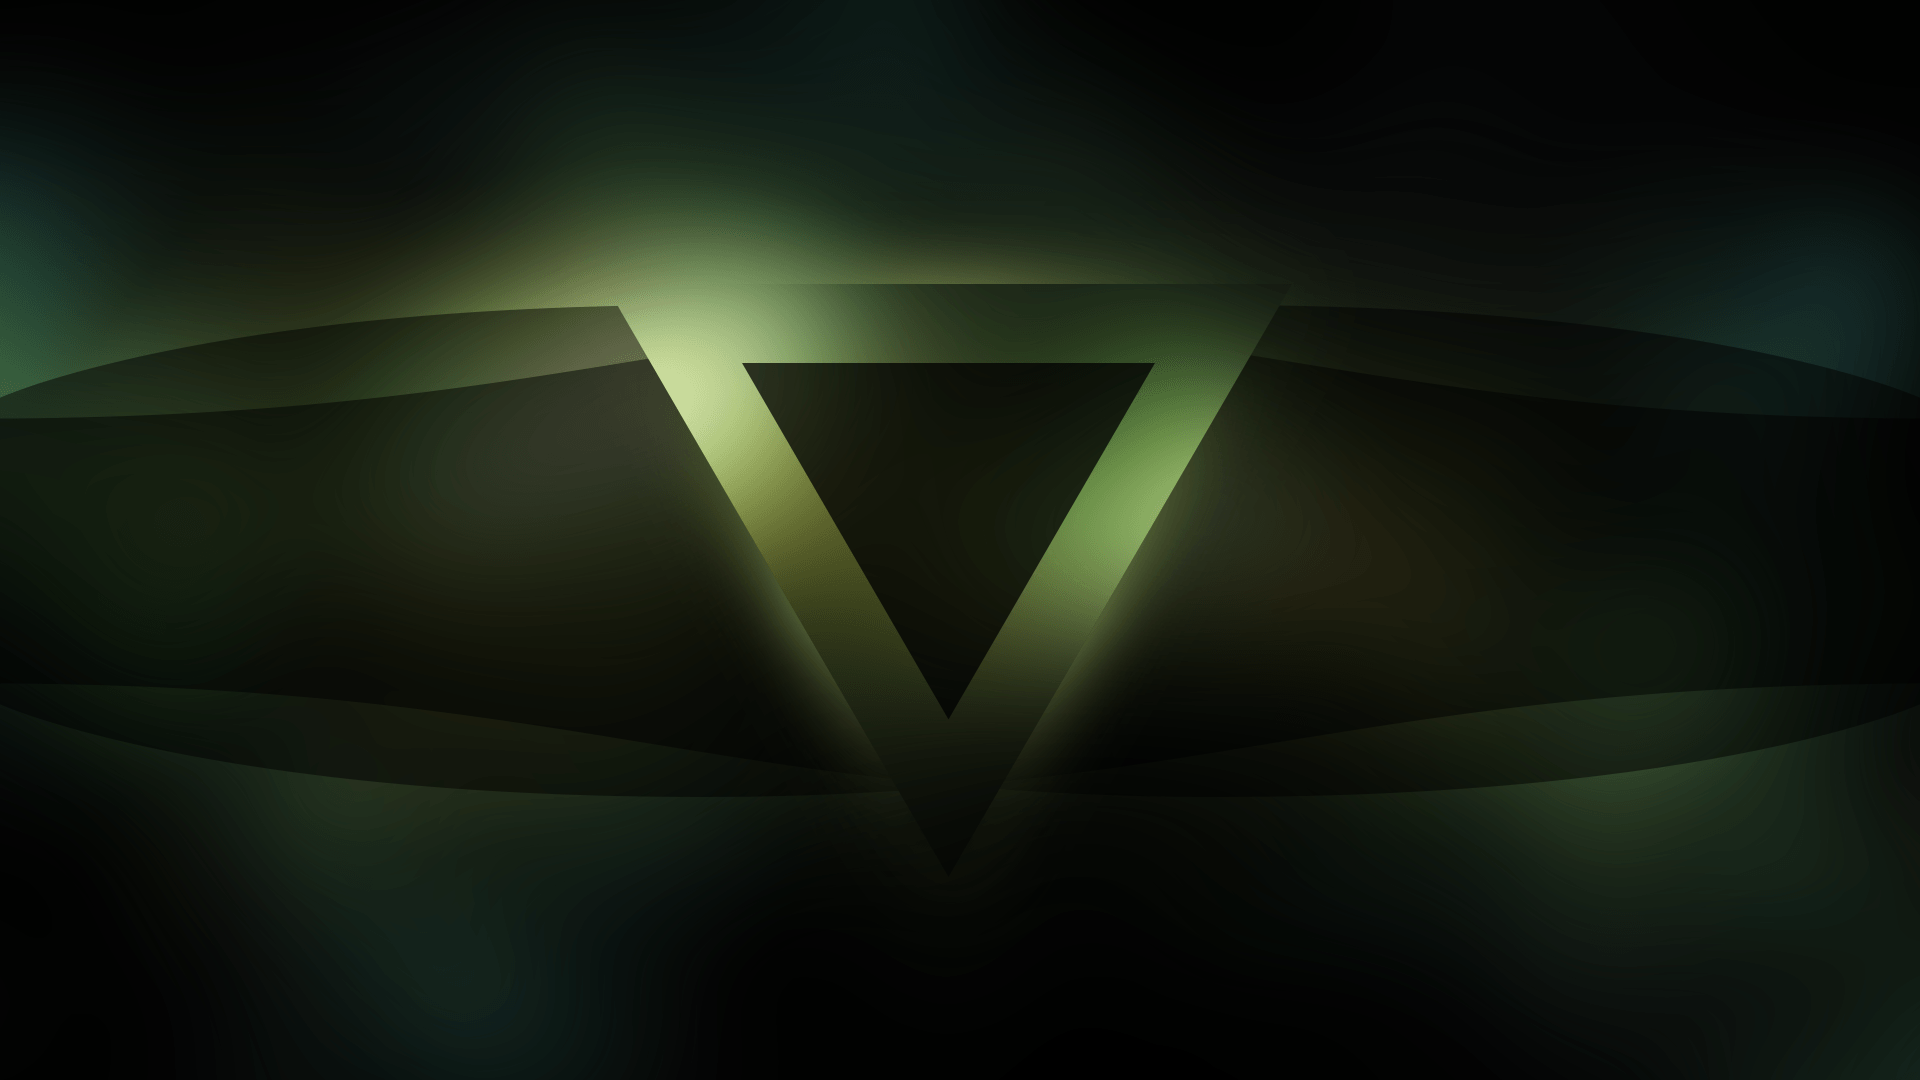 Dark Green Triangle Logo - Wallpaper : sunlight, dark, space, logo, symmetry, green, triangle ...